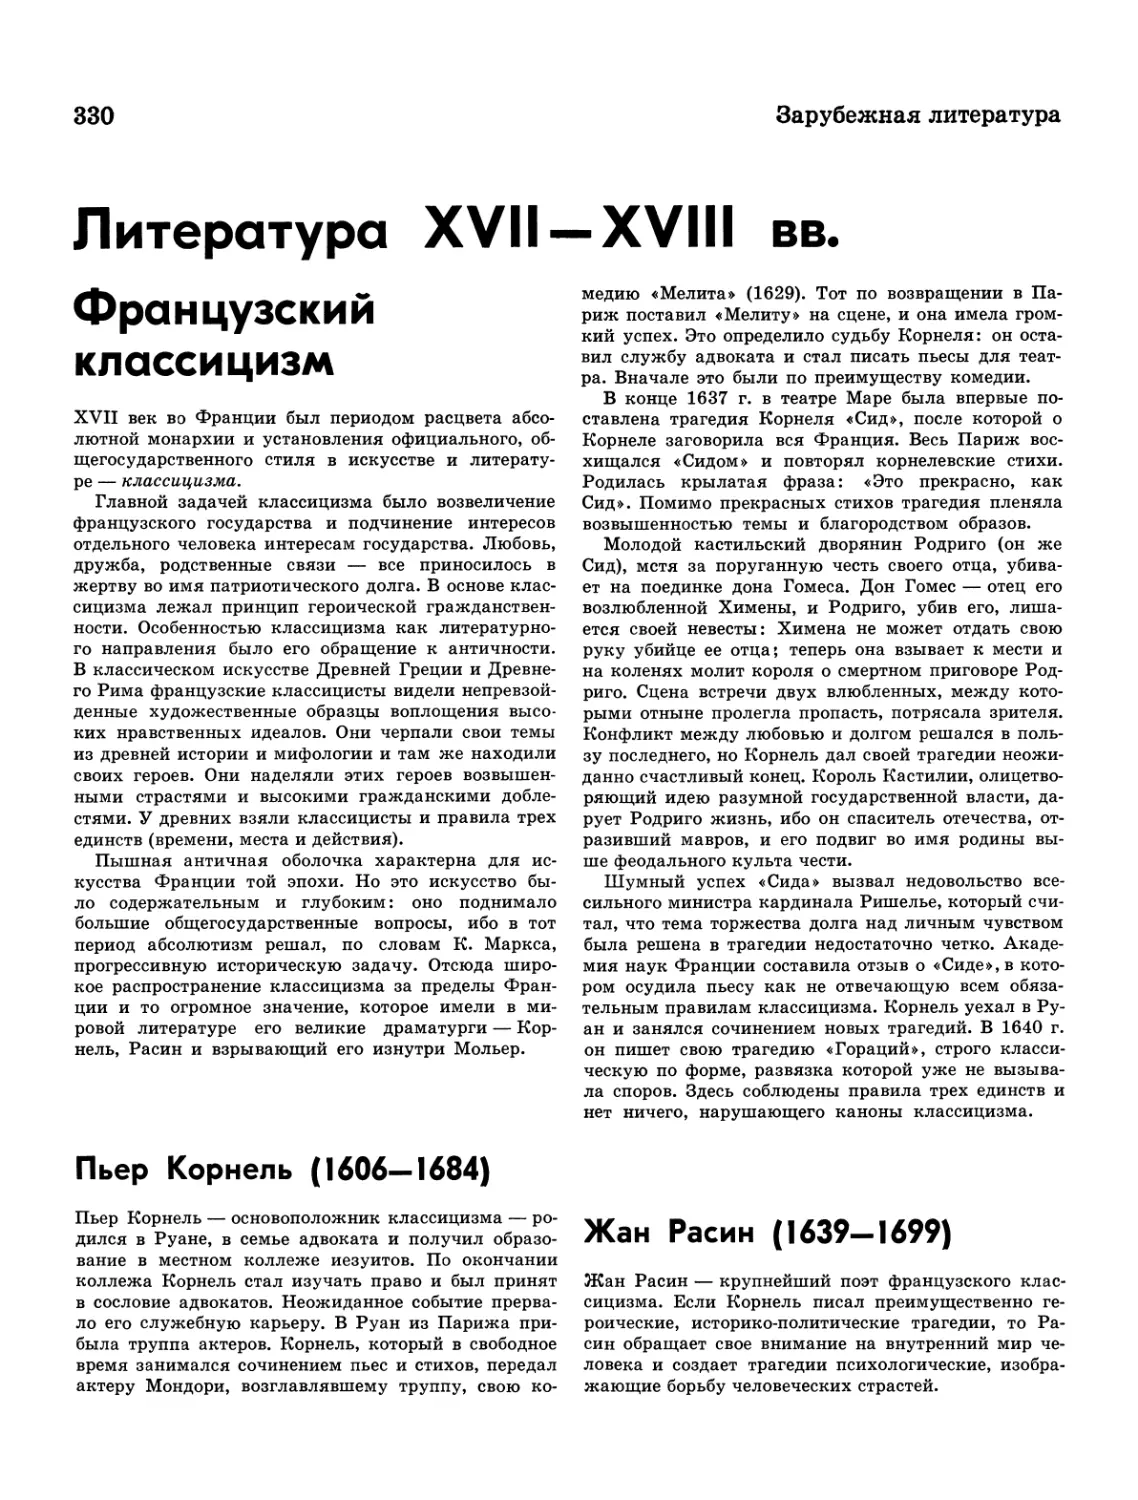 Литература XVII—XVIII вв.
Жан Расин